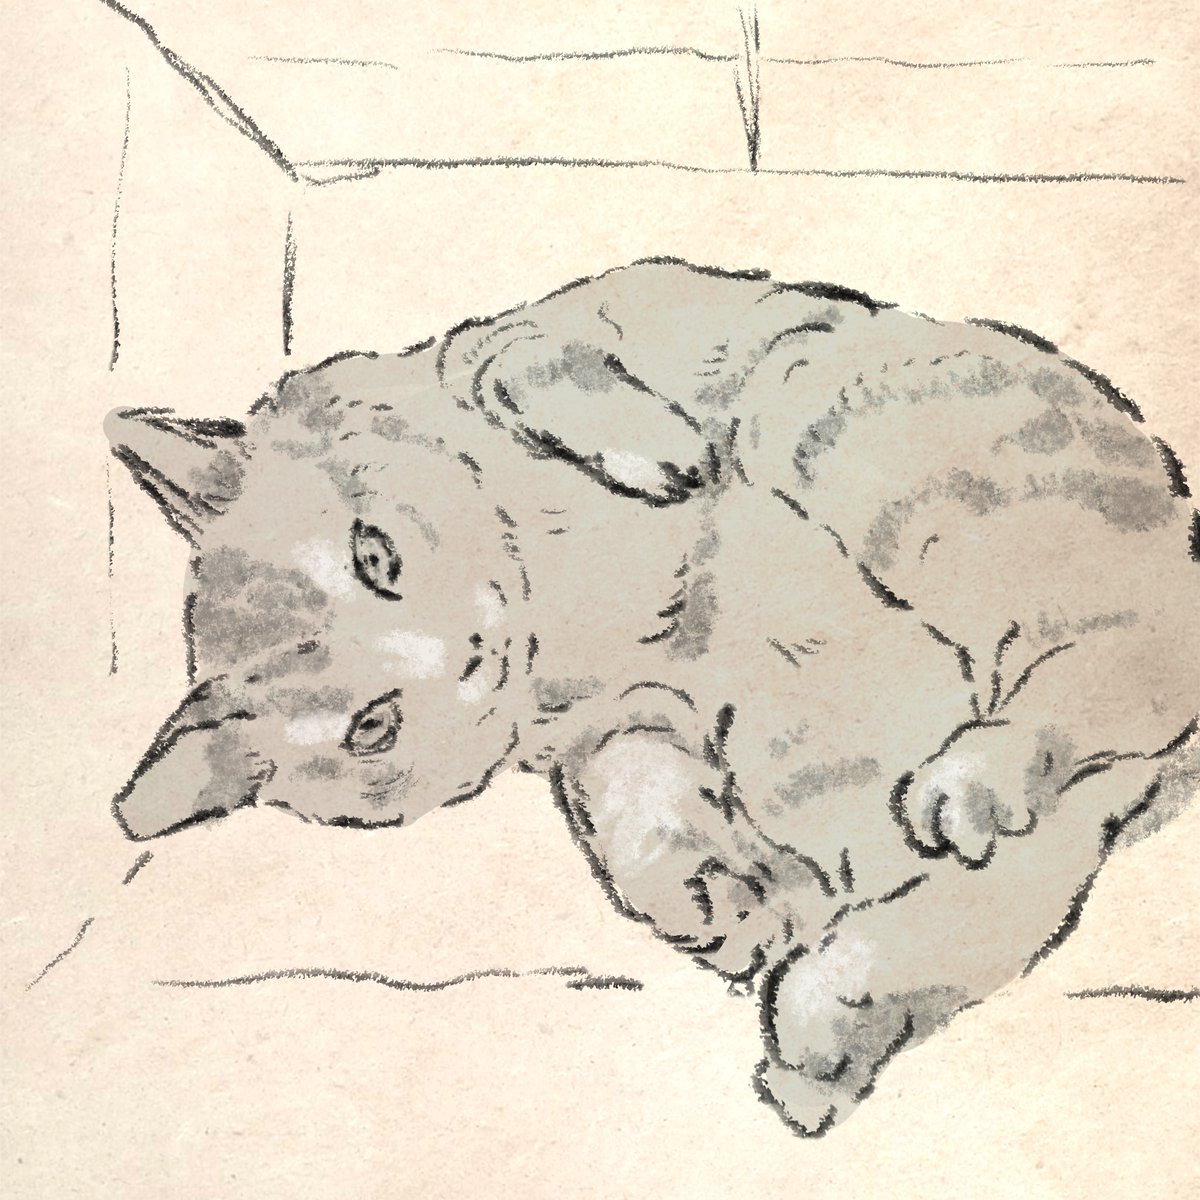 伸びてるけど、ネコ系の宣伝がない。たまに描くネコちゃんの絵でも見ていってください。たまにしか描きません。 以前、超絶にネコを描きたい発作が起きた時に、フォロワーさん達のネコちゃんを描いたりしました。